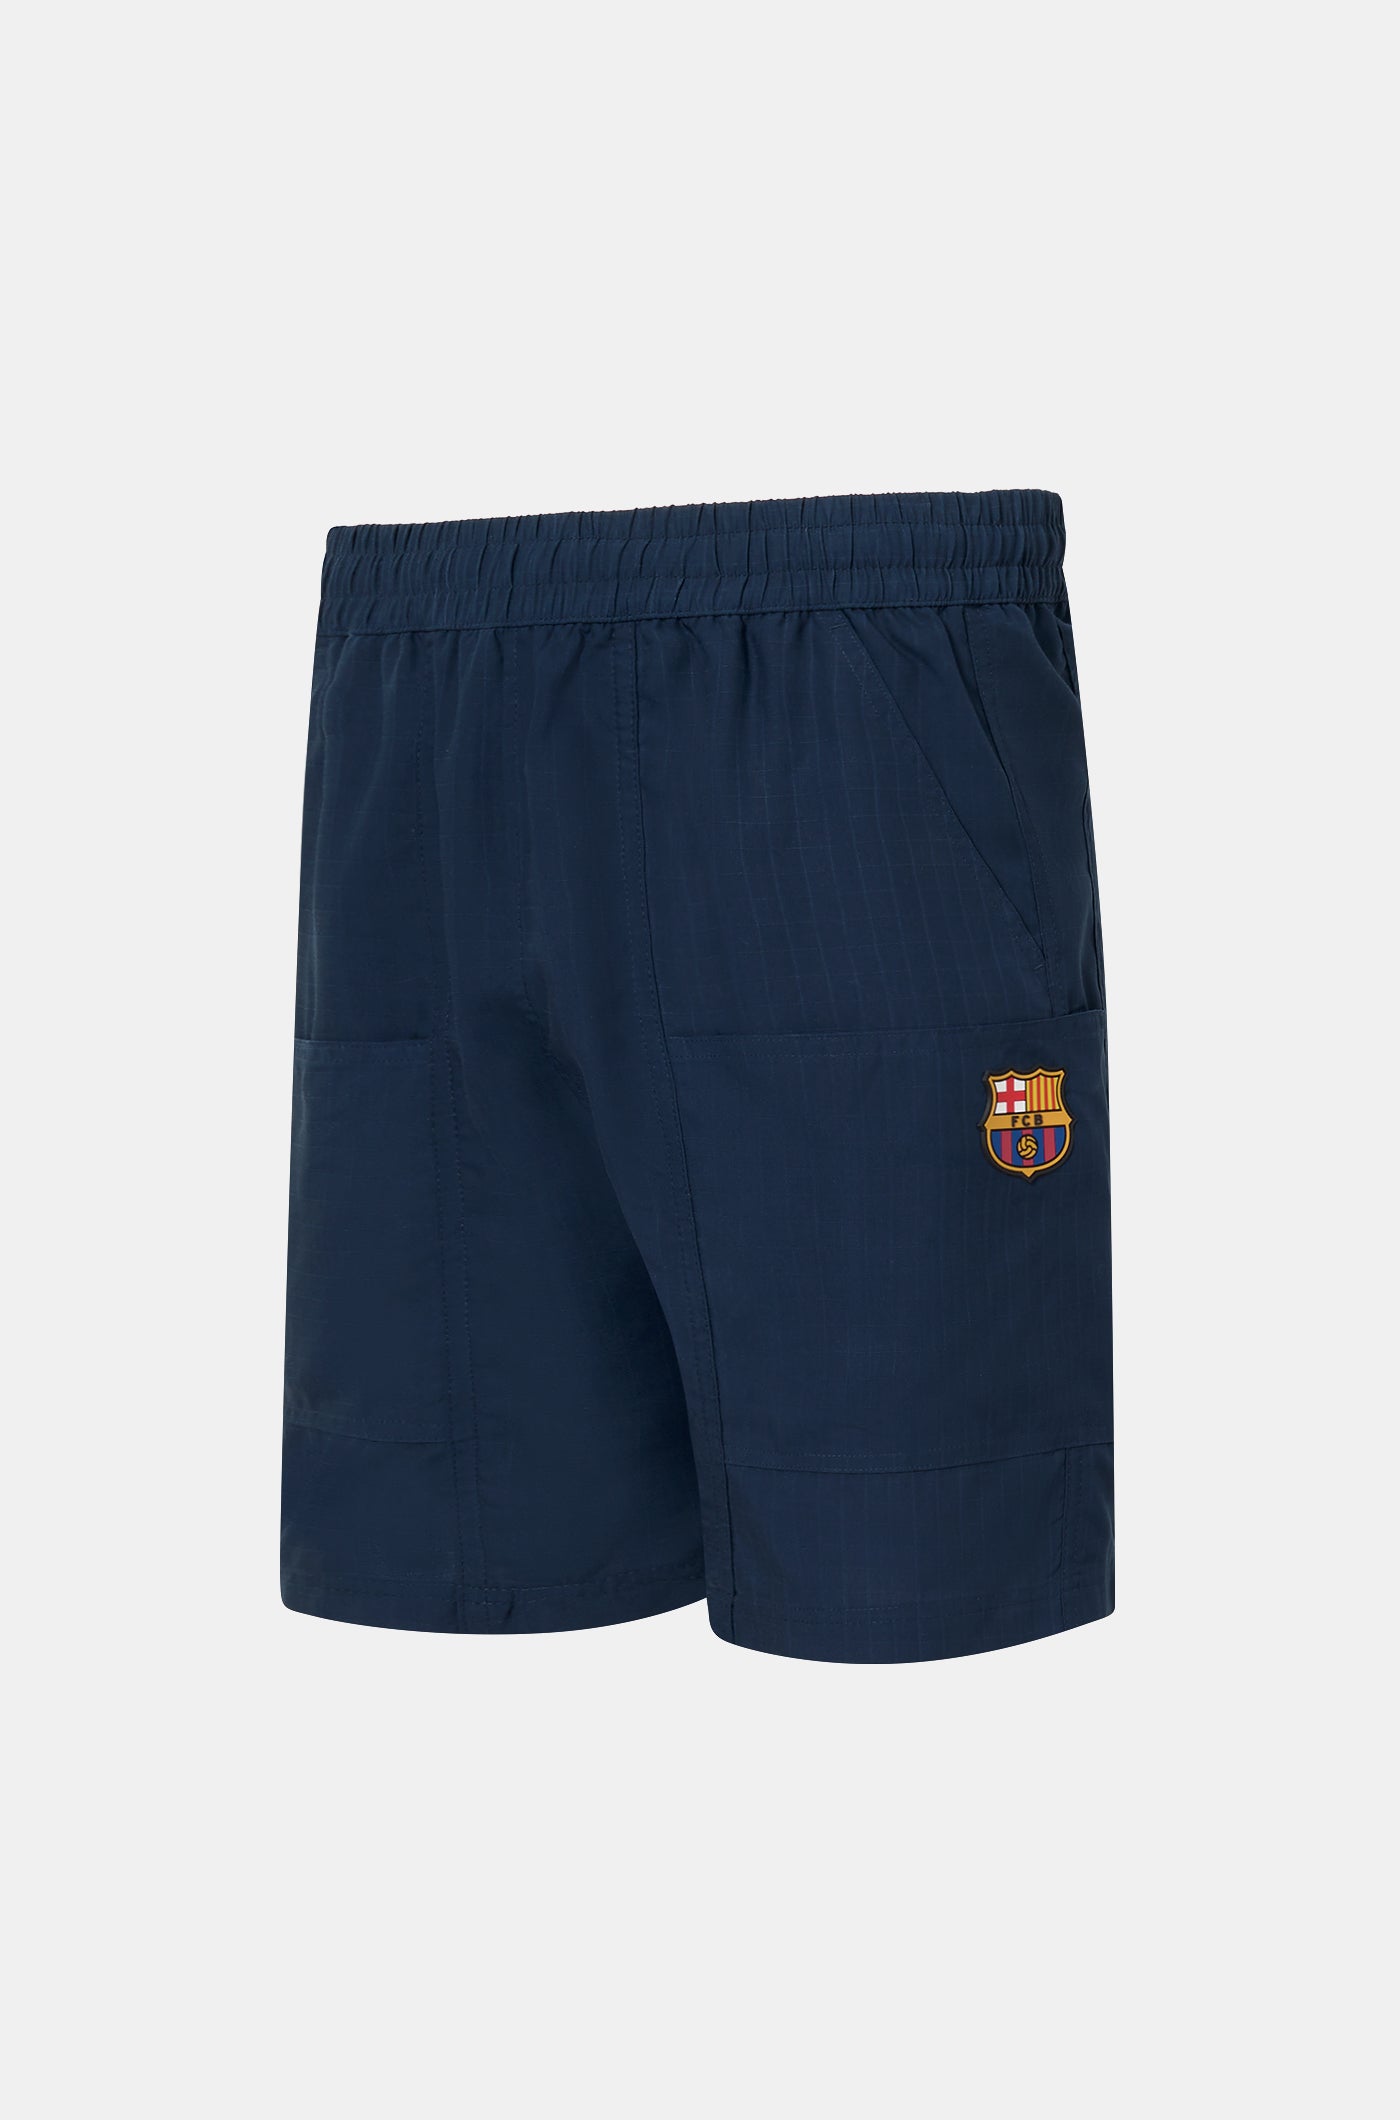 Pantón corto azul marino Barça